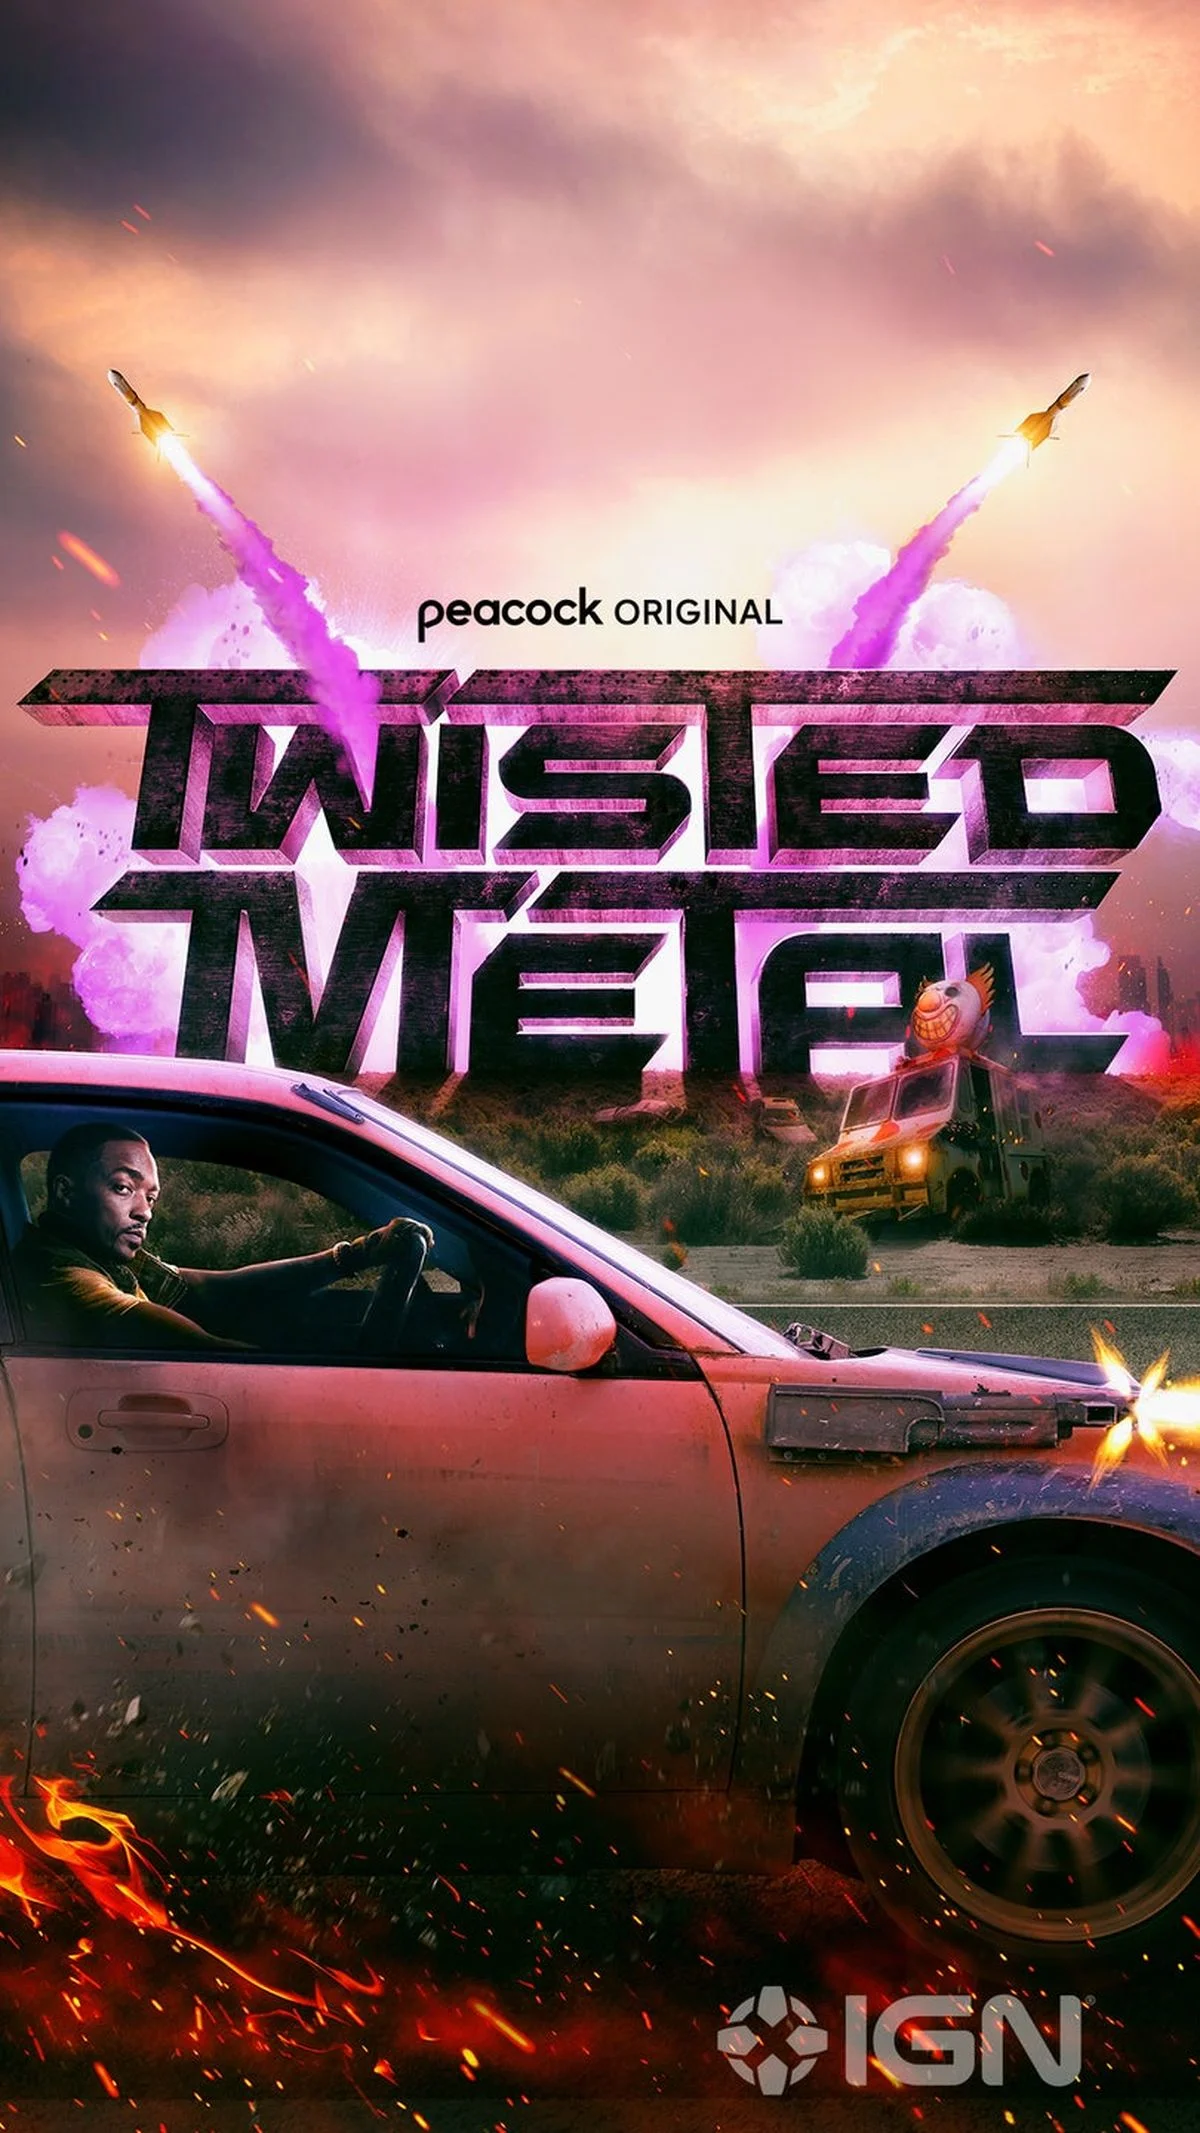 Опубликован первый постер сериала по мотивам Twisted Metal с Энтони Маки - фото 1